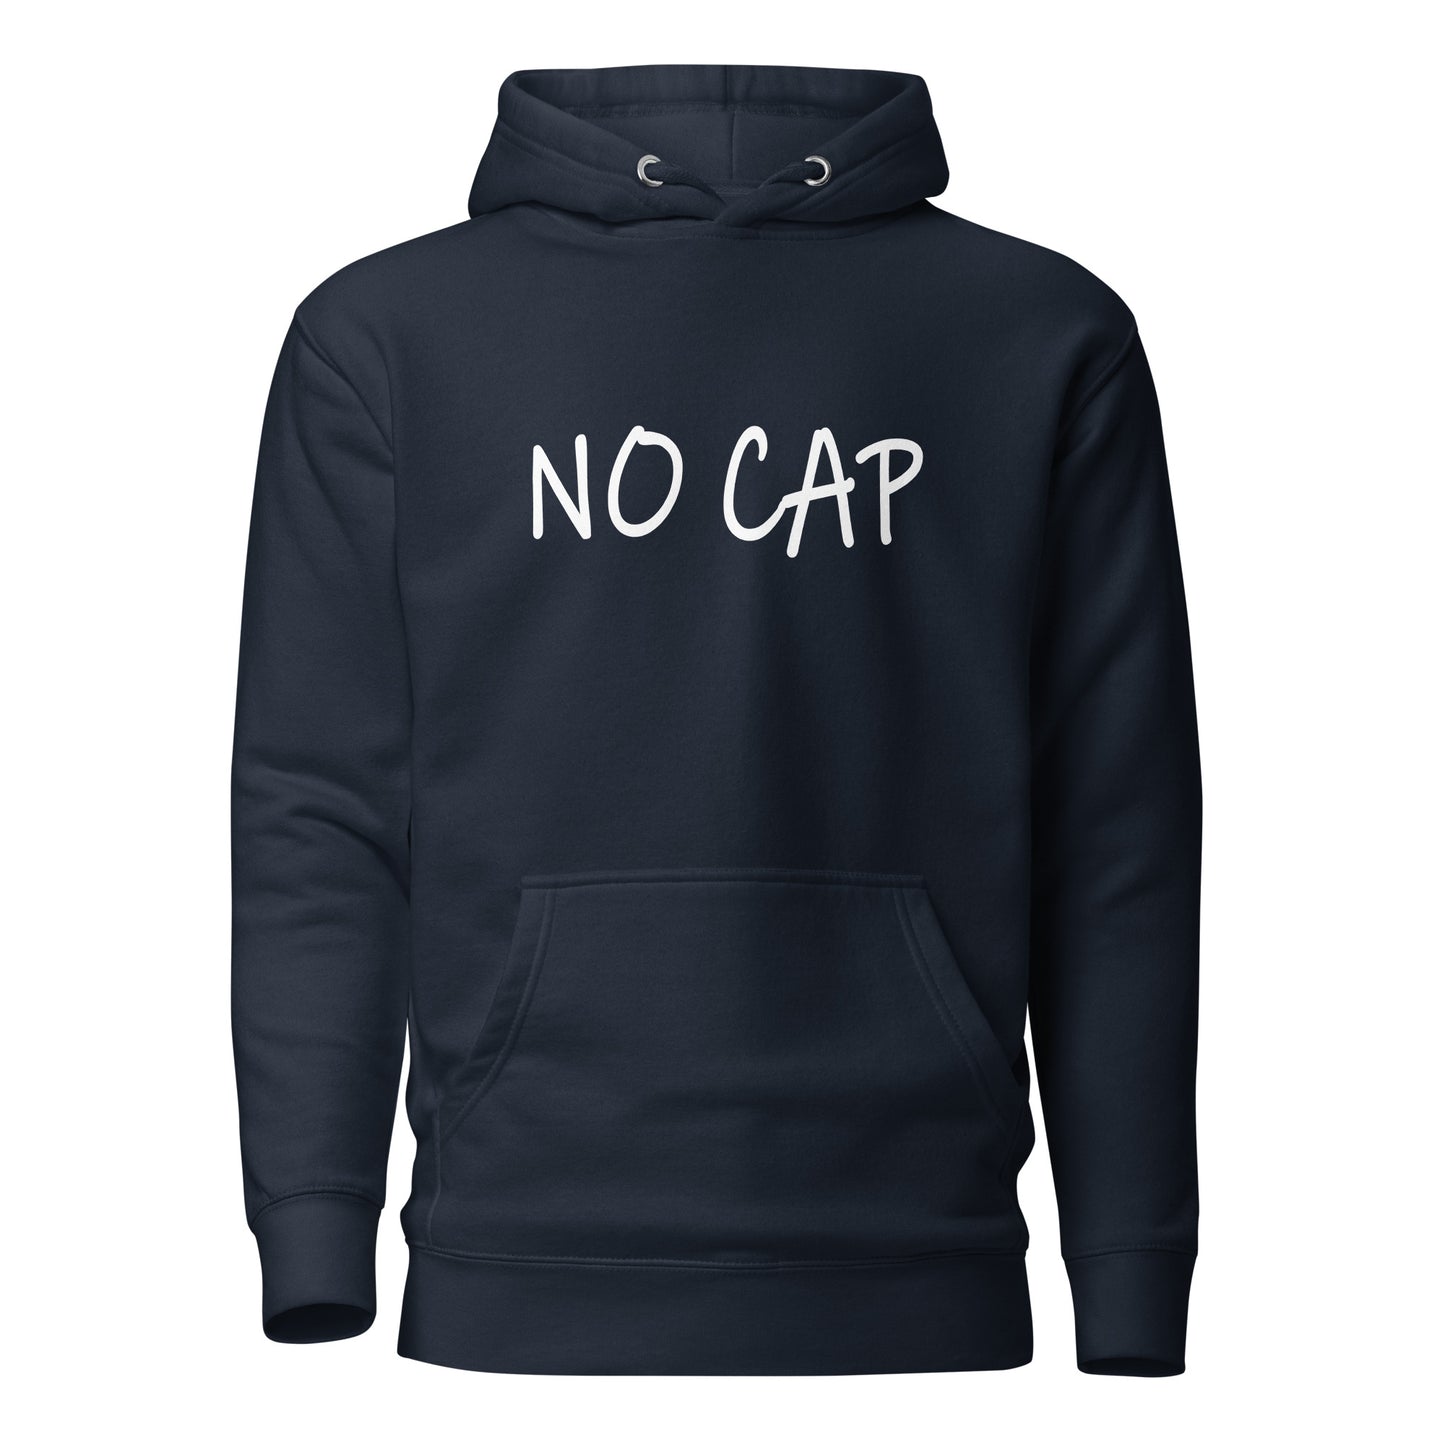 "NO CAP" Hoodie